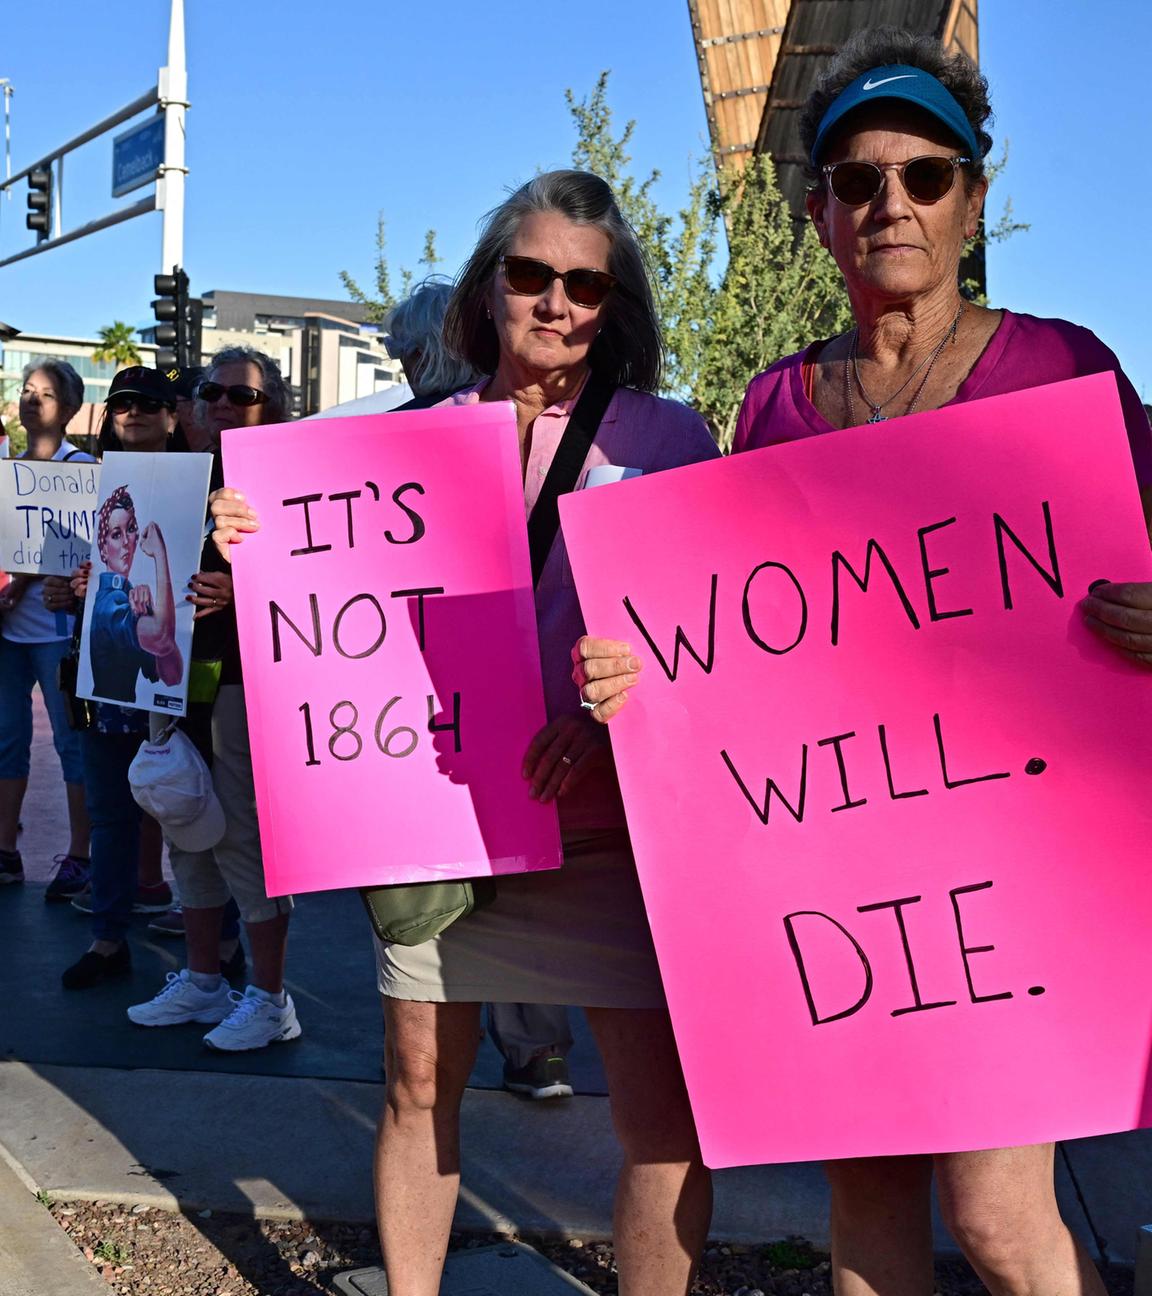 Am Straßenrand stehen Demonstranten mit Schildern, vorne sind zwei Frauen zu sehen, die pinke Schilder in die Kamera halten mit den Aufschriften "Frauen werden streben" und "Es ist nicht 1864".